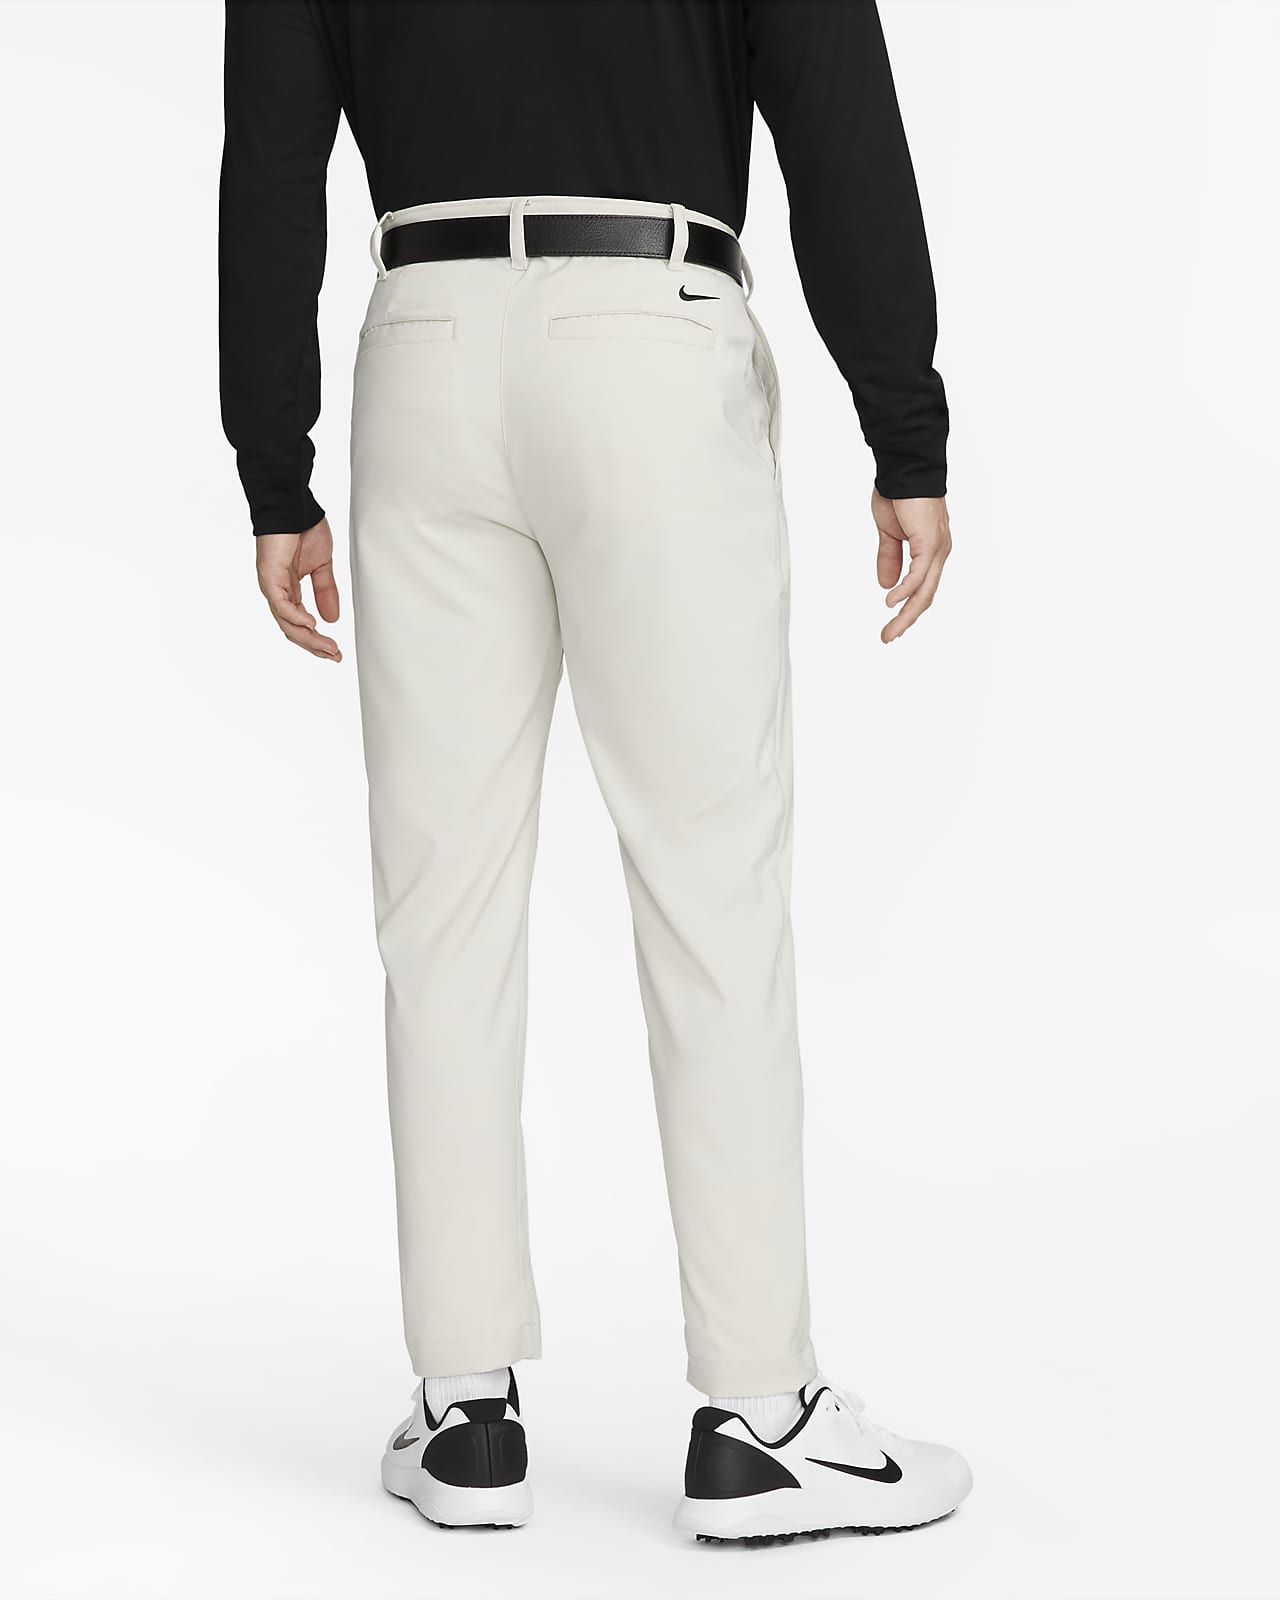 Womens Dri-FIT Golf Pants & Tights. Nike JP